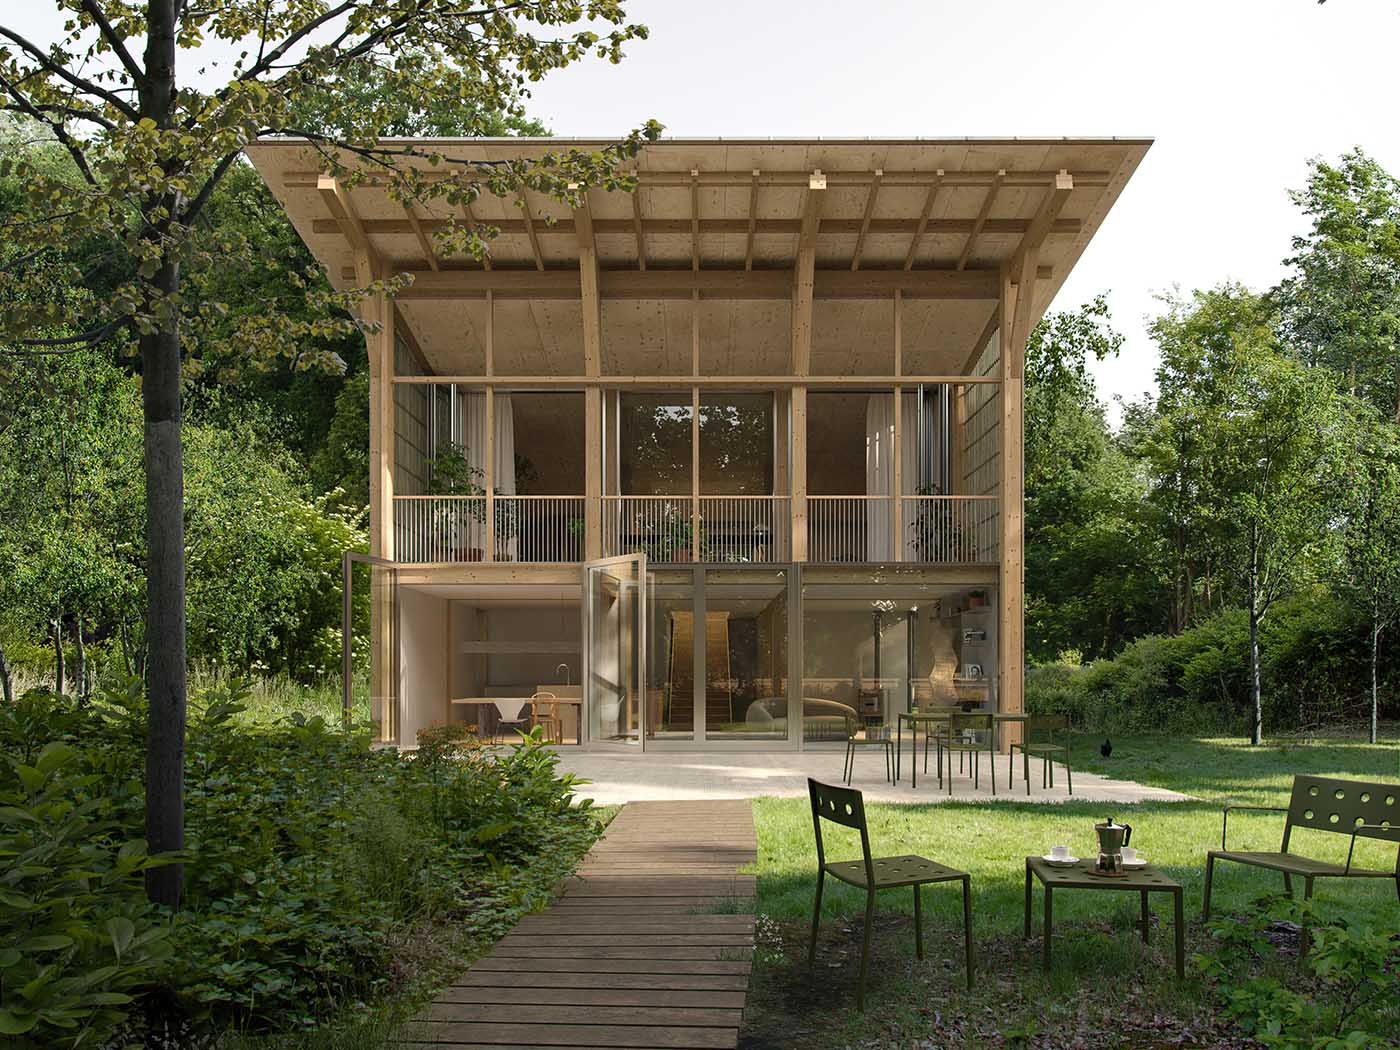 maison durable en bois Image: © Architecture de Collection - Photo : © Ma - Ciguë architectes - Faber Picturae